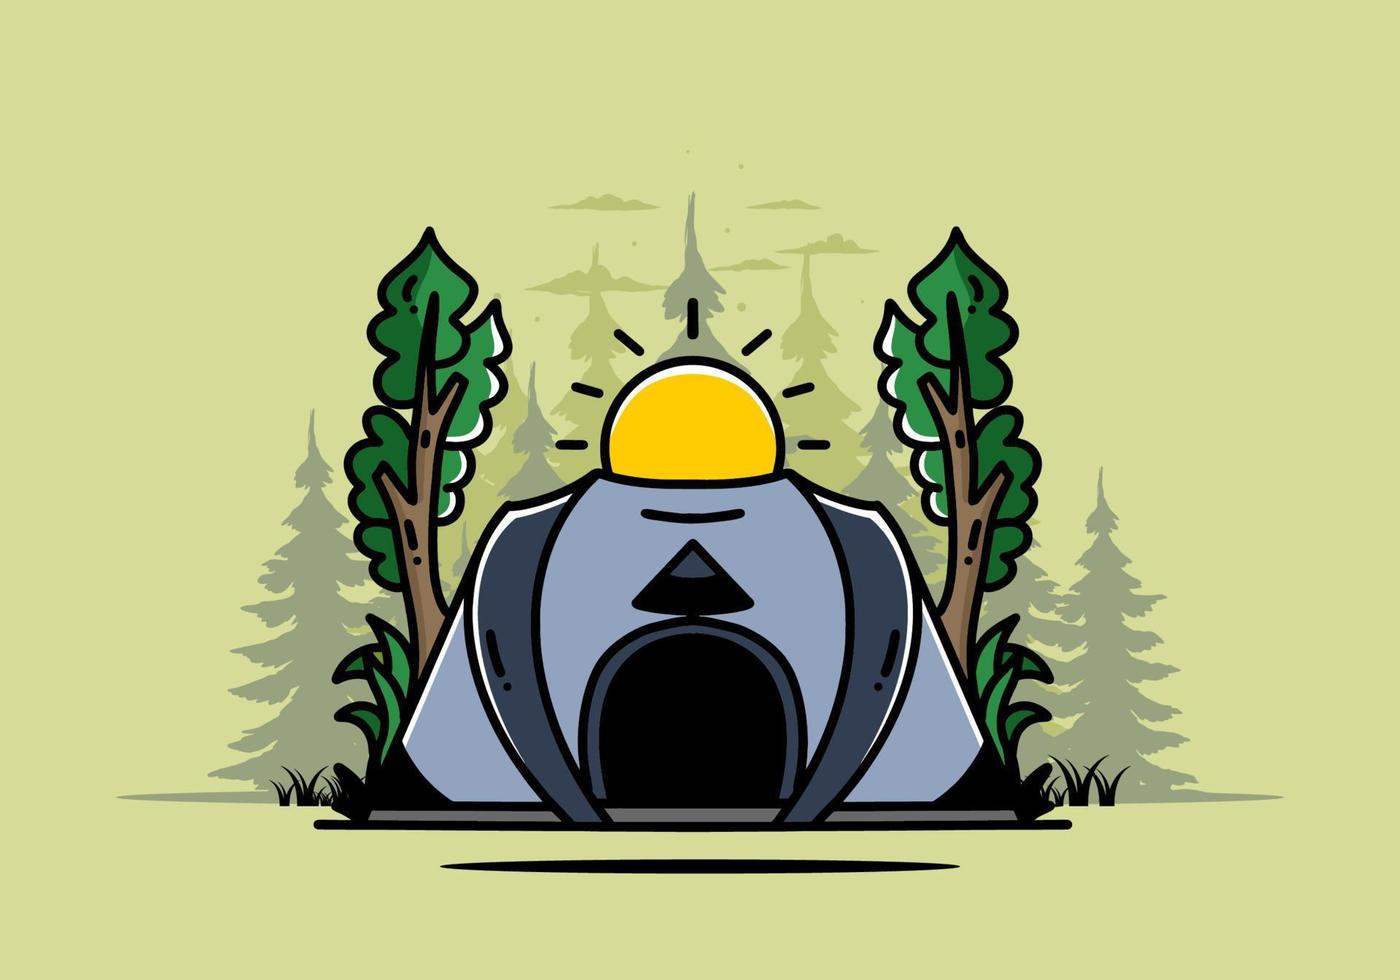 grote pop-up tent voor het ontwerpen van badges voor campingillustraties vector